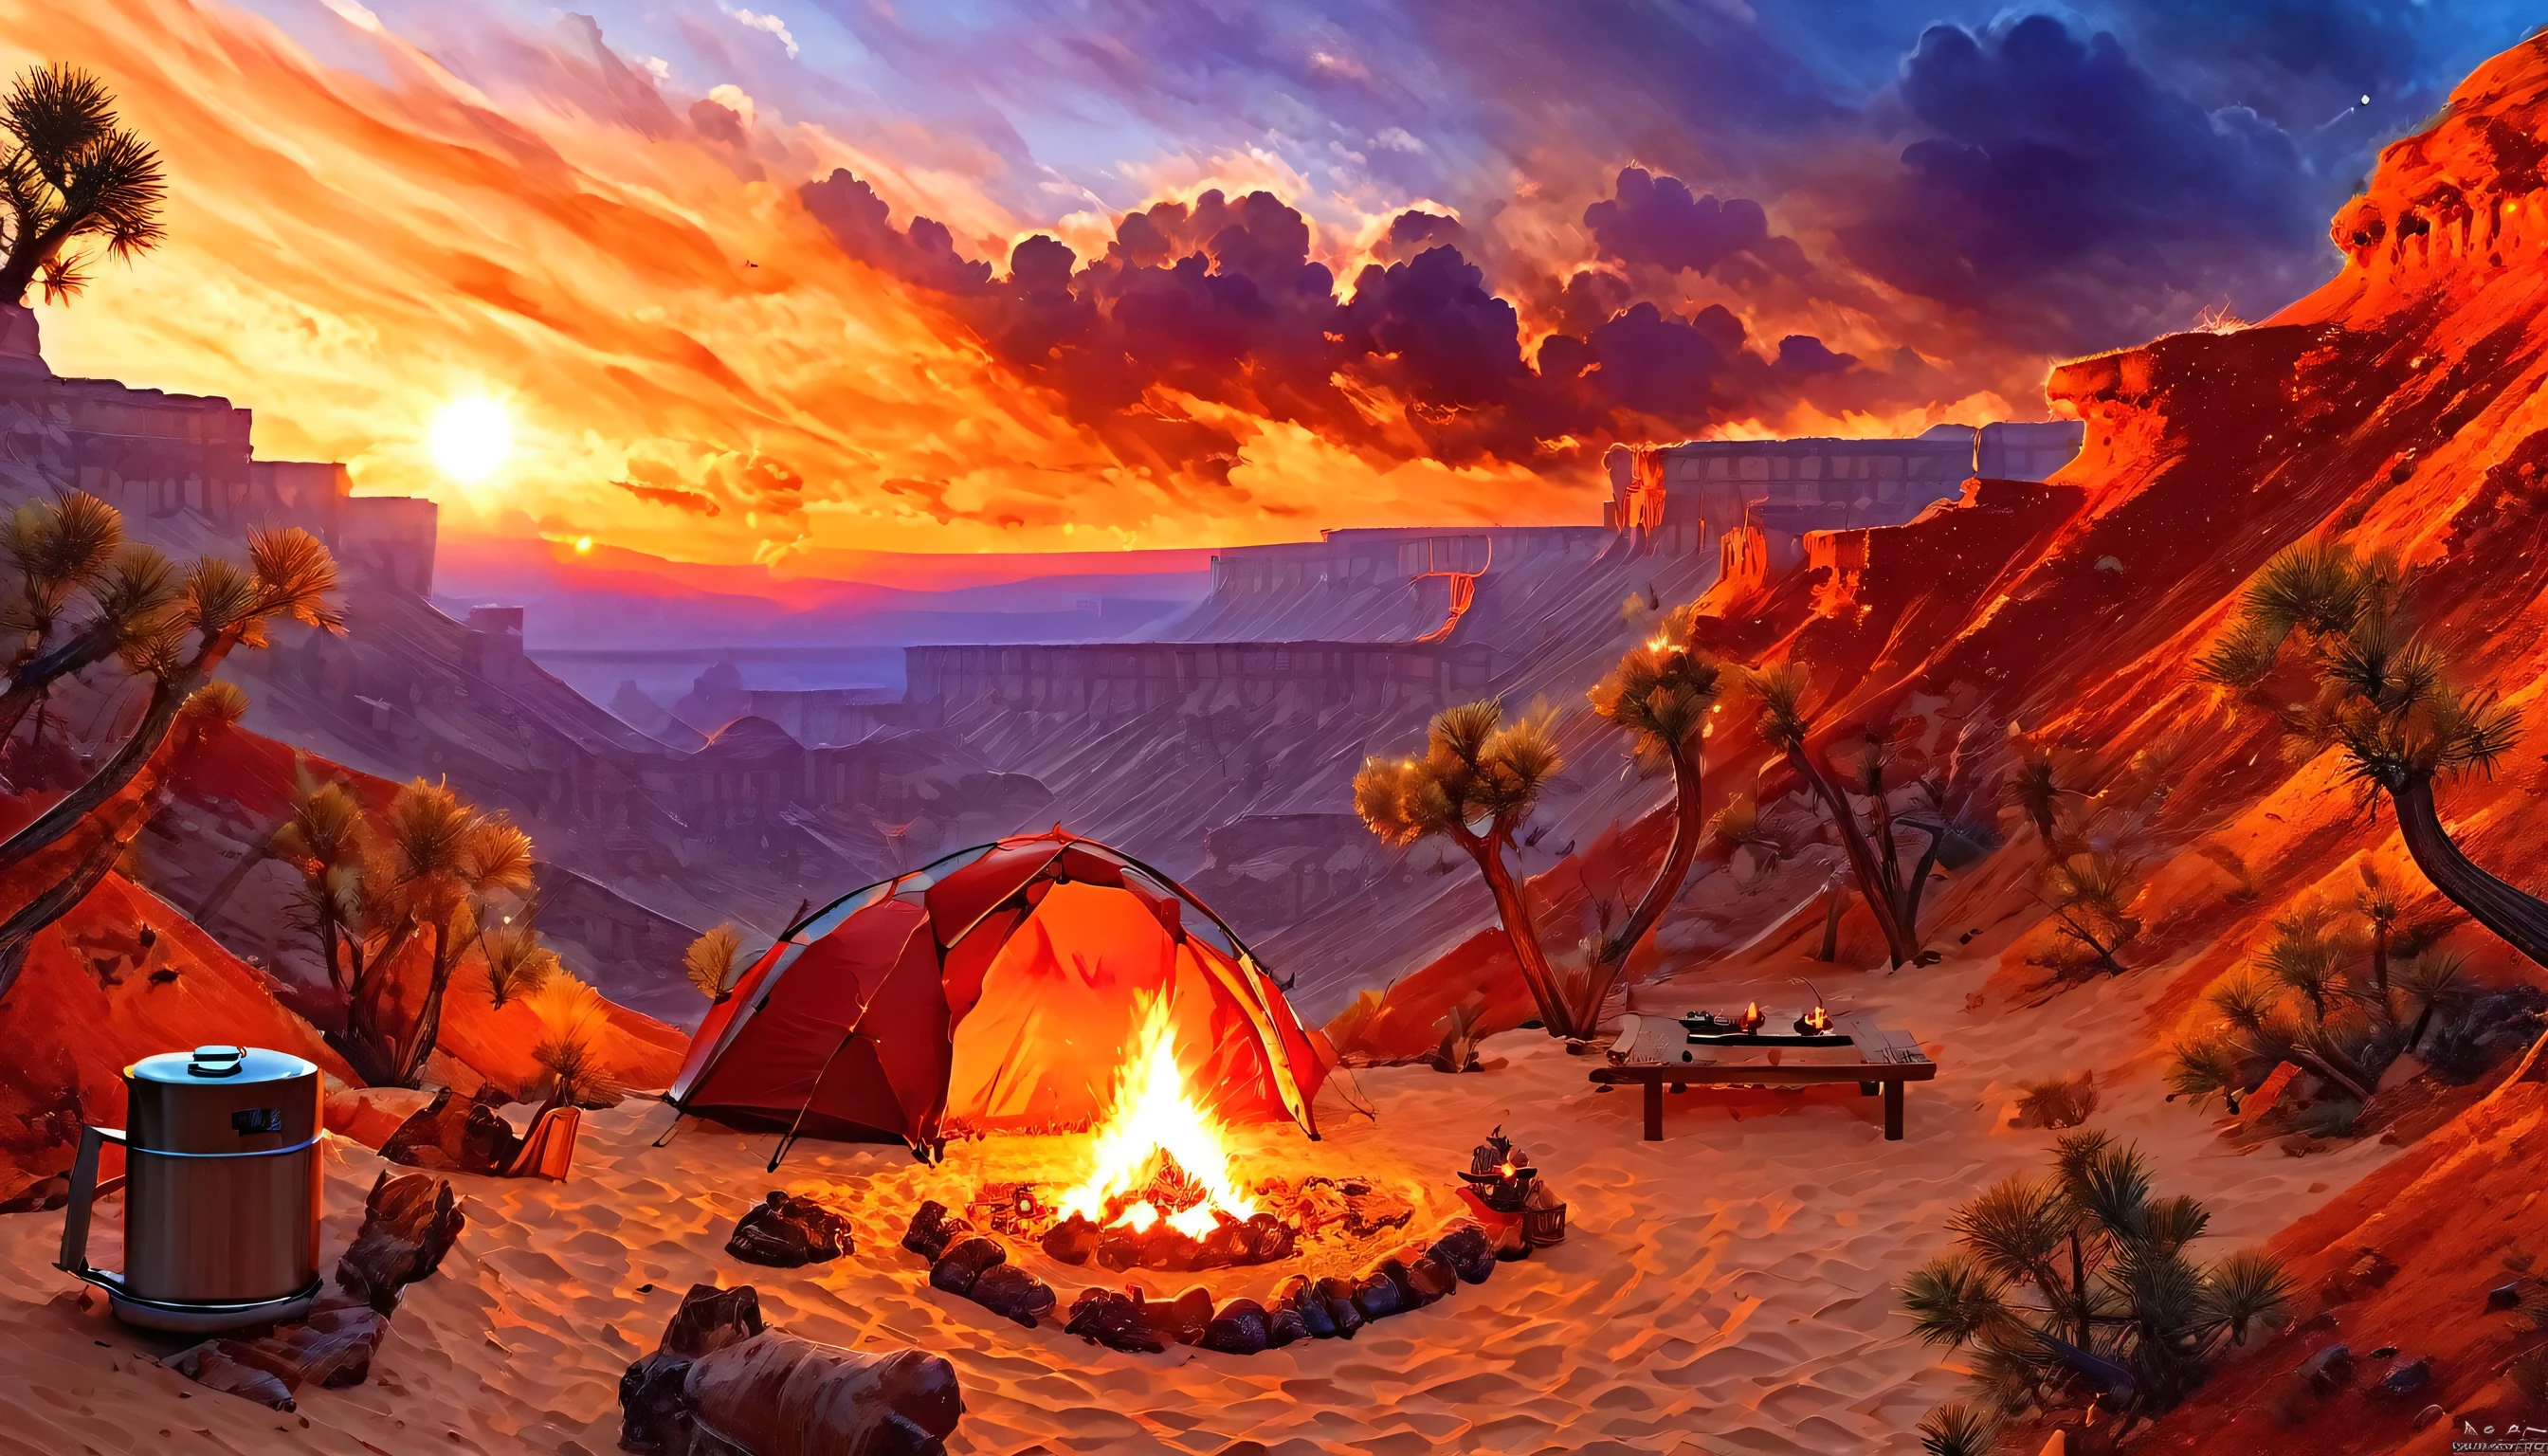 Arafed, una foto de un camping (carpa: 1.2) y pequeña (hoguera: 1.3), en la cima de una montaña desértica, su puesta de sol el cielo está en varios tonos de  (rojo: 1.1), (Naranja: 1.1), (azur: 1.1) (púrpura:1.1) hay humo saliendo del campamento de bomberos, hay una vista magnífica del cañón del desierto y los barrancos., hay pocos árboles en el horizonte, es un tiempo de serenidad, paz, y relajación, mejor calidad, 16k,  photorealism, Sesión de fotos ganadora del premio National Geographic, tiro ultra amplio, Nebulosa furiosa, damasombra